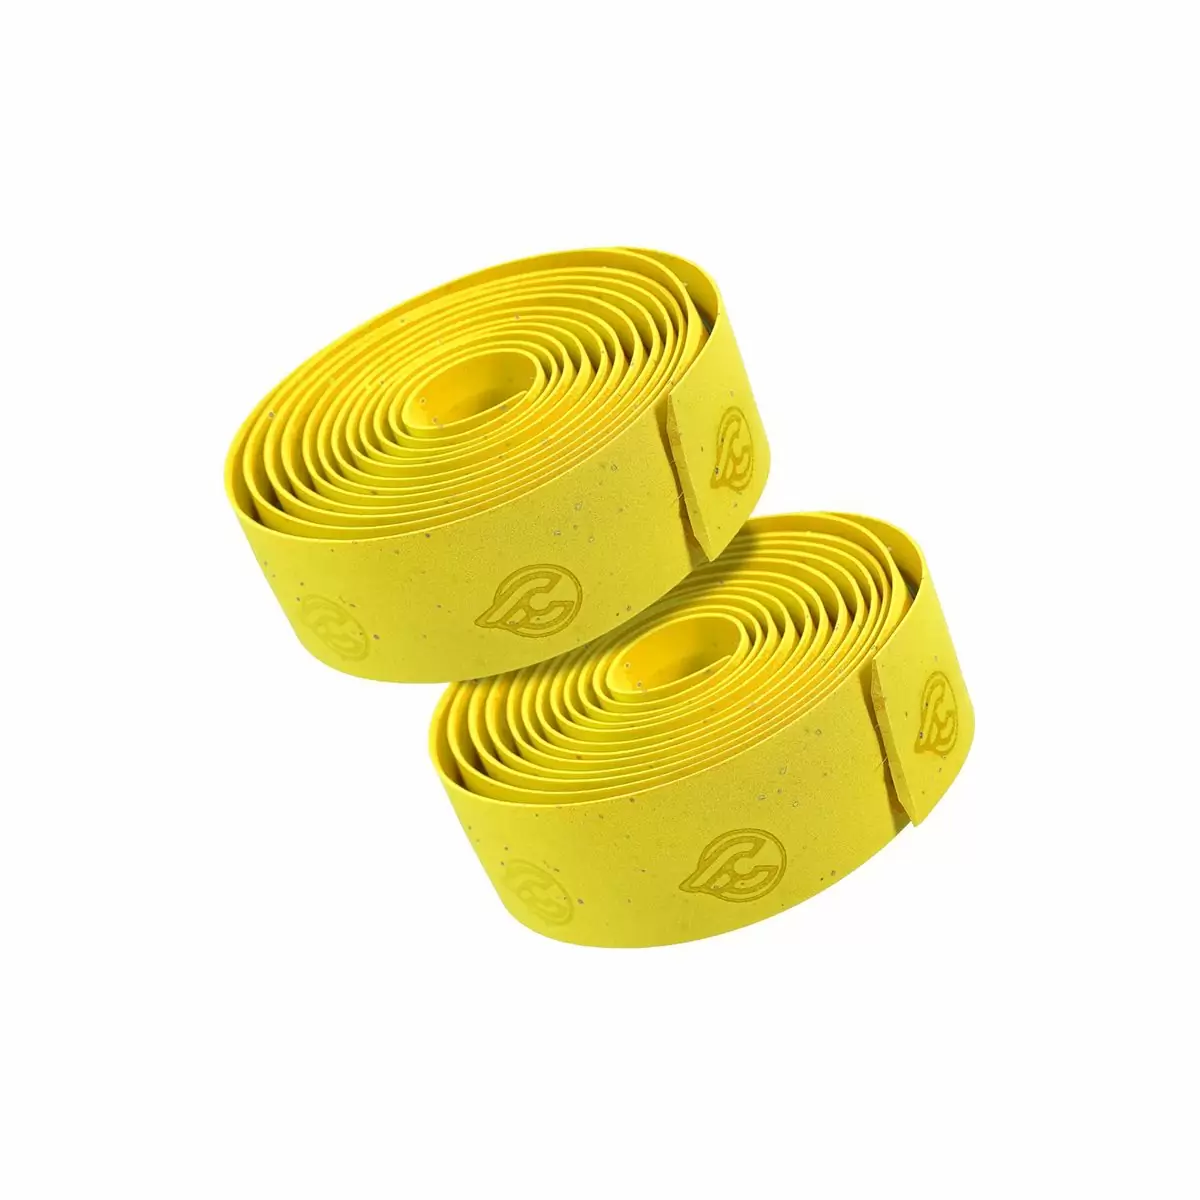 Cork handlebar tape yellow - image